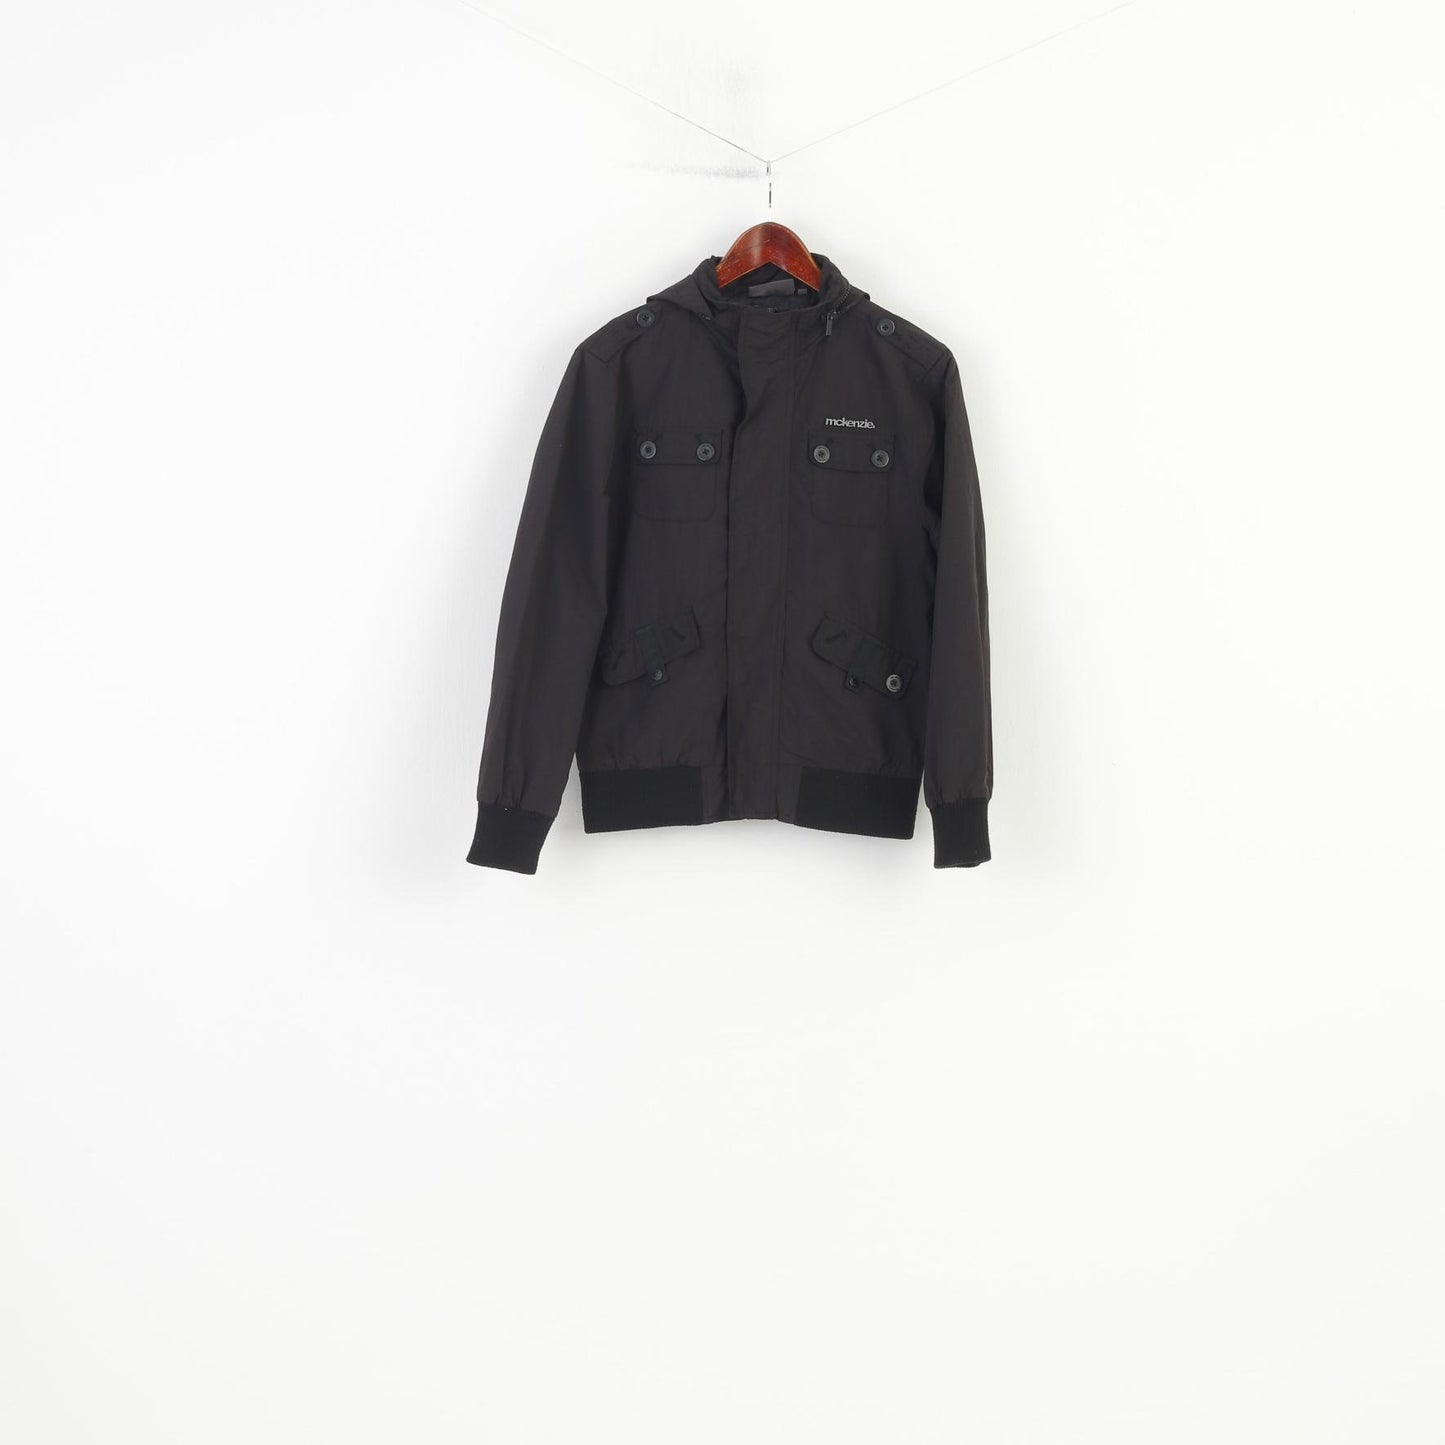 Mckenzie Women XS Jacket Nylon Waterproof Hood Black Full zipper Vintage Sport Pockets Top 